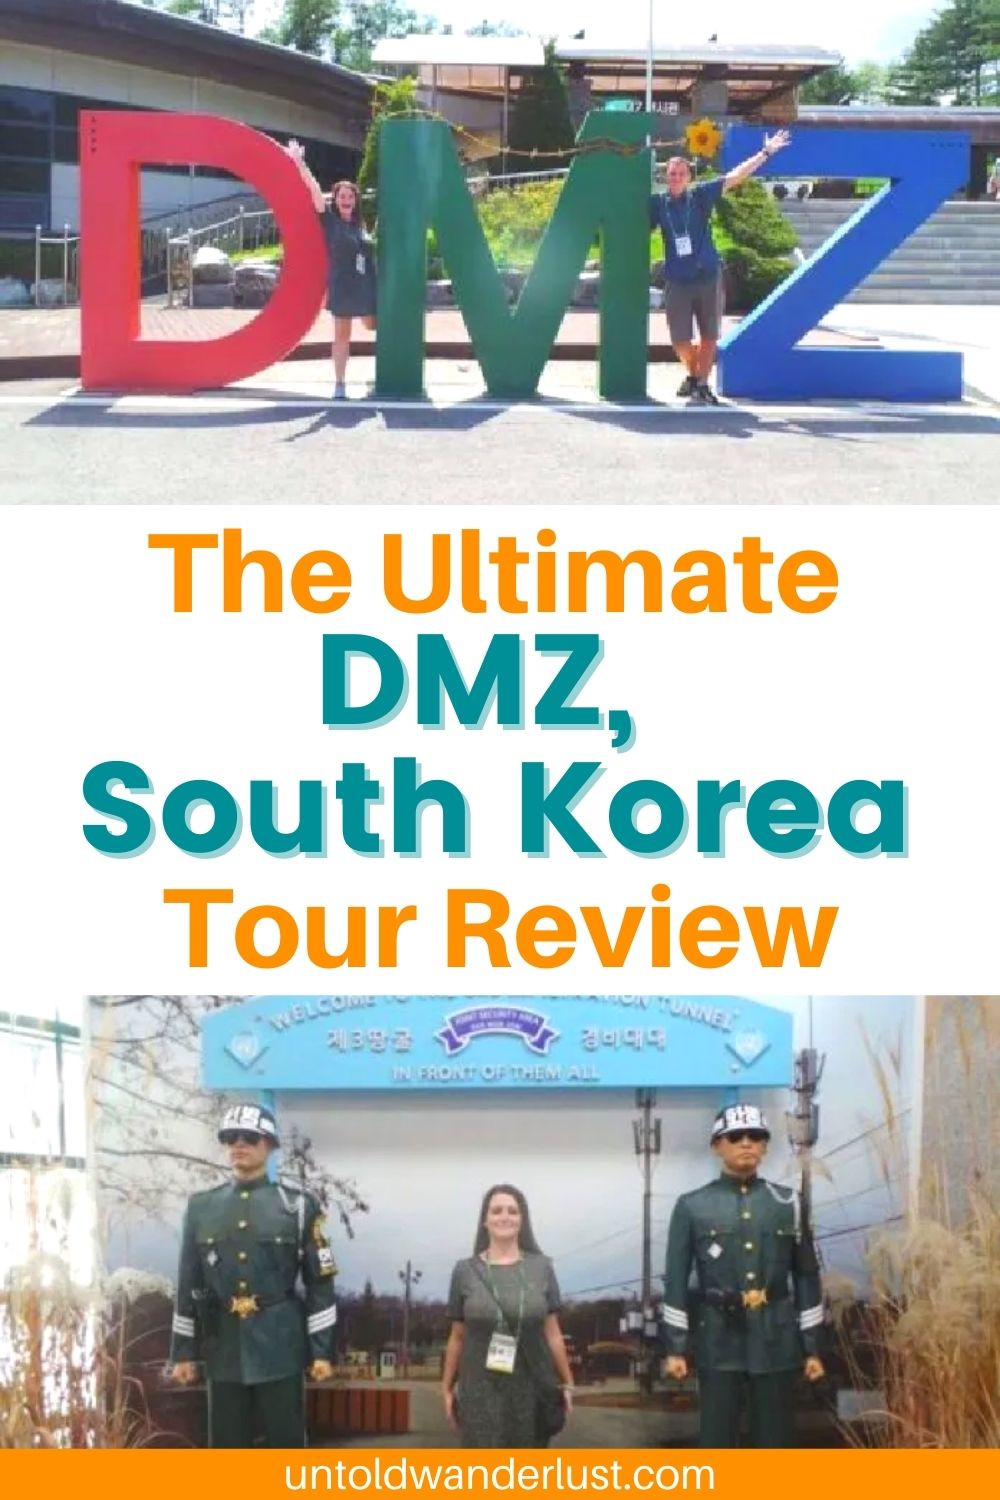 The Ultimate DMZ, South Korea Tour Review